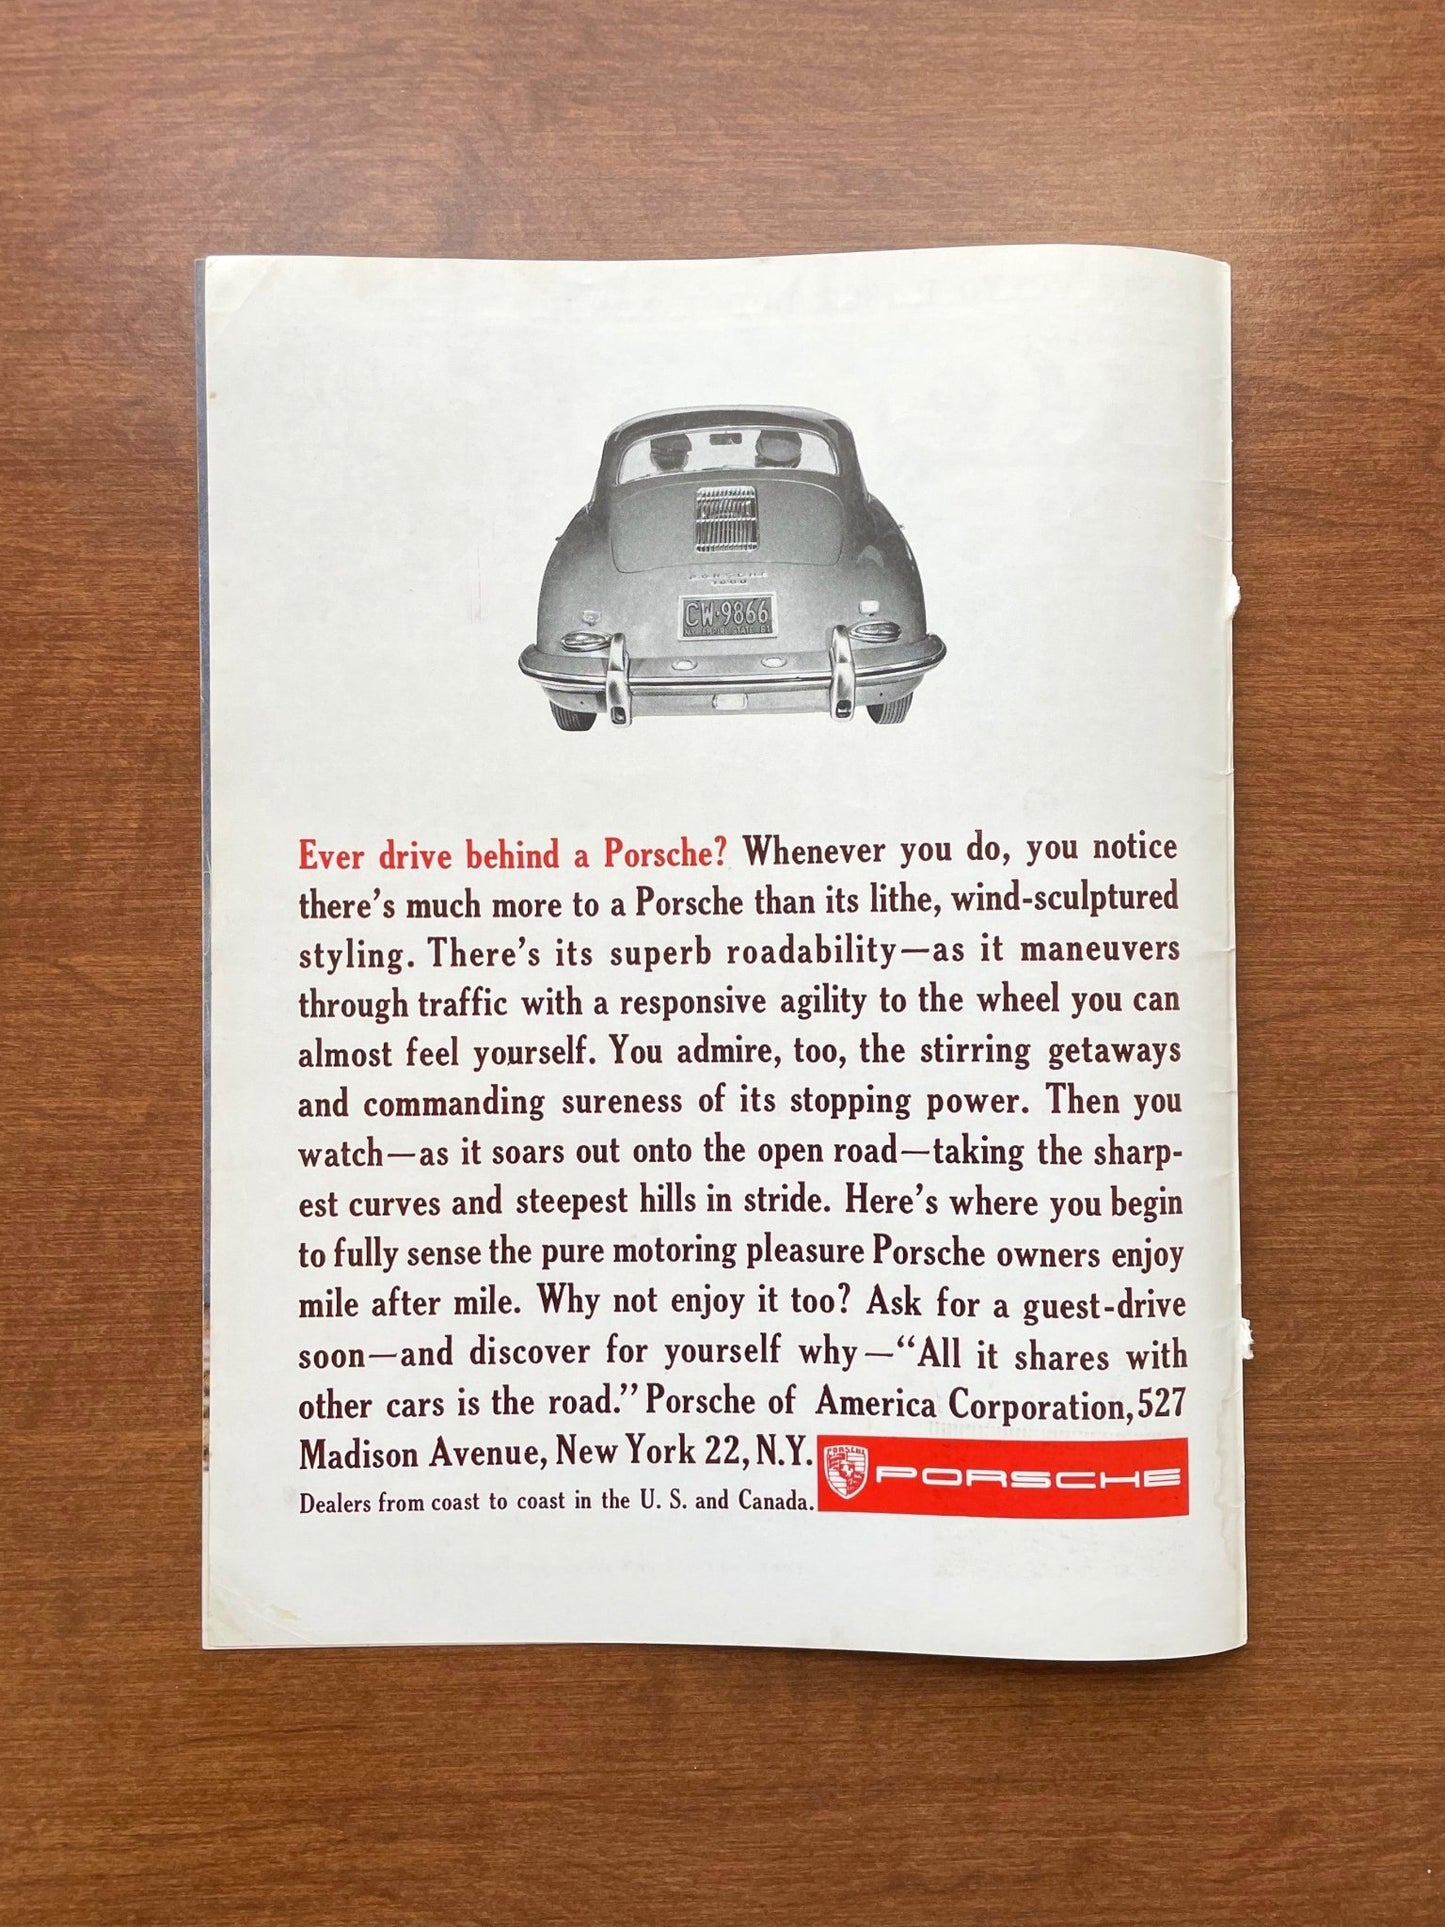 1961 Porsche "Ever drive behind a Porsche?" Advertisement